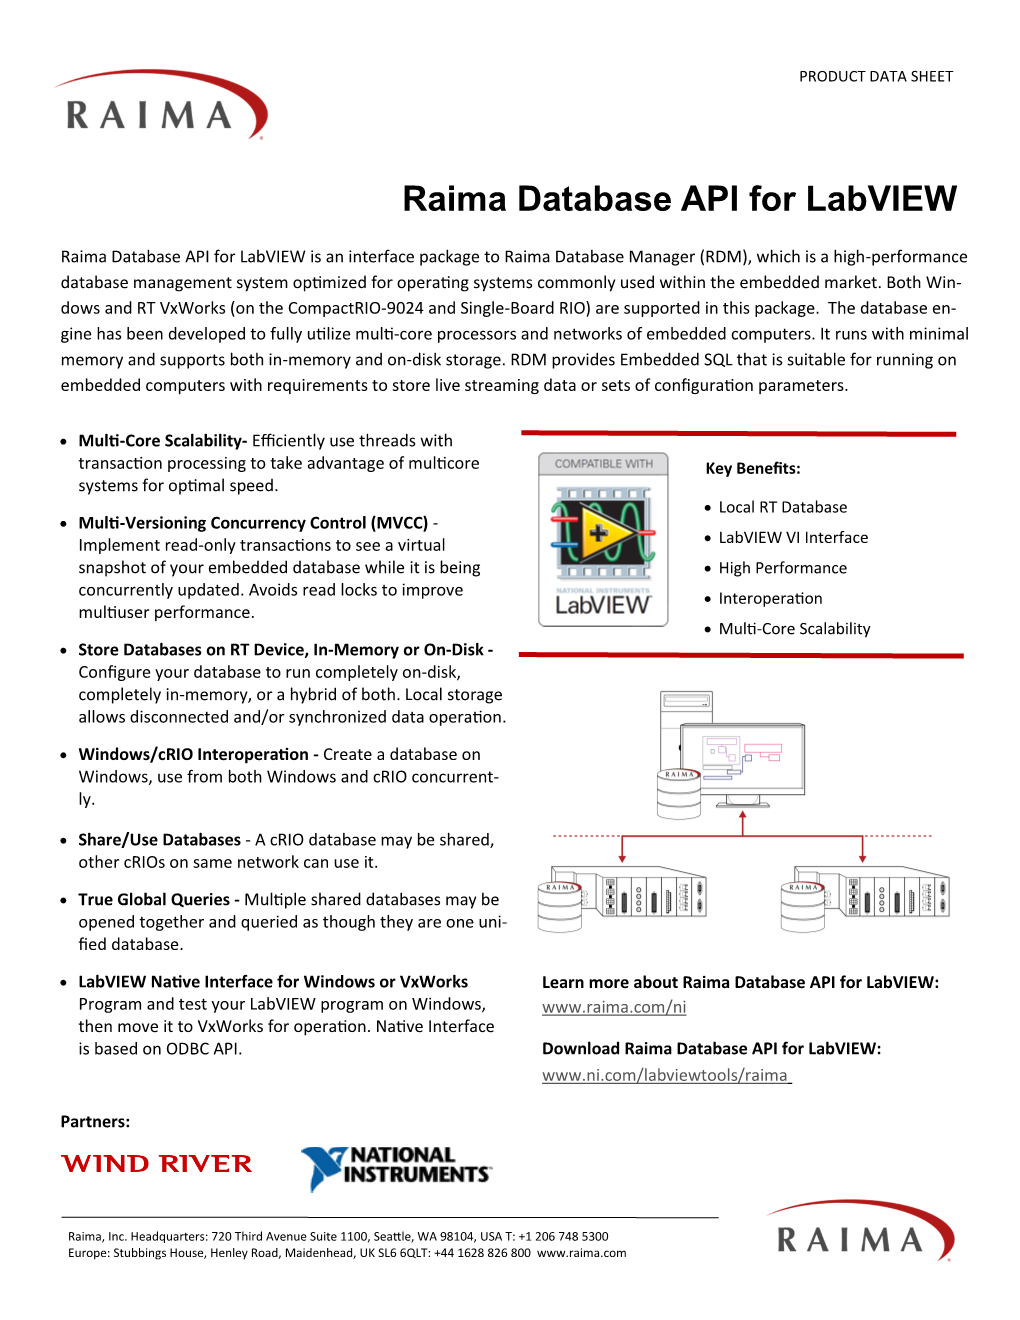 Raima Database API for Labview